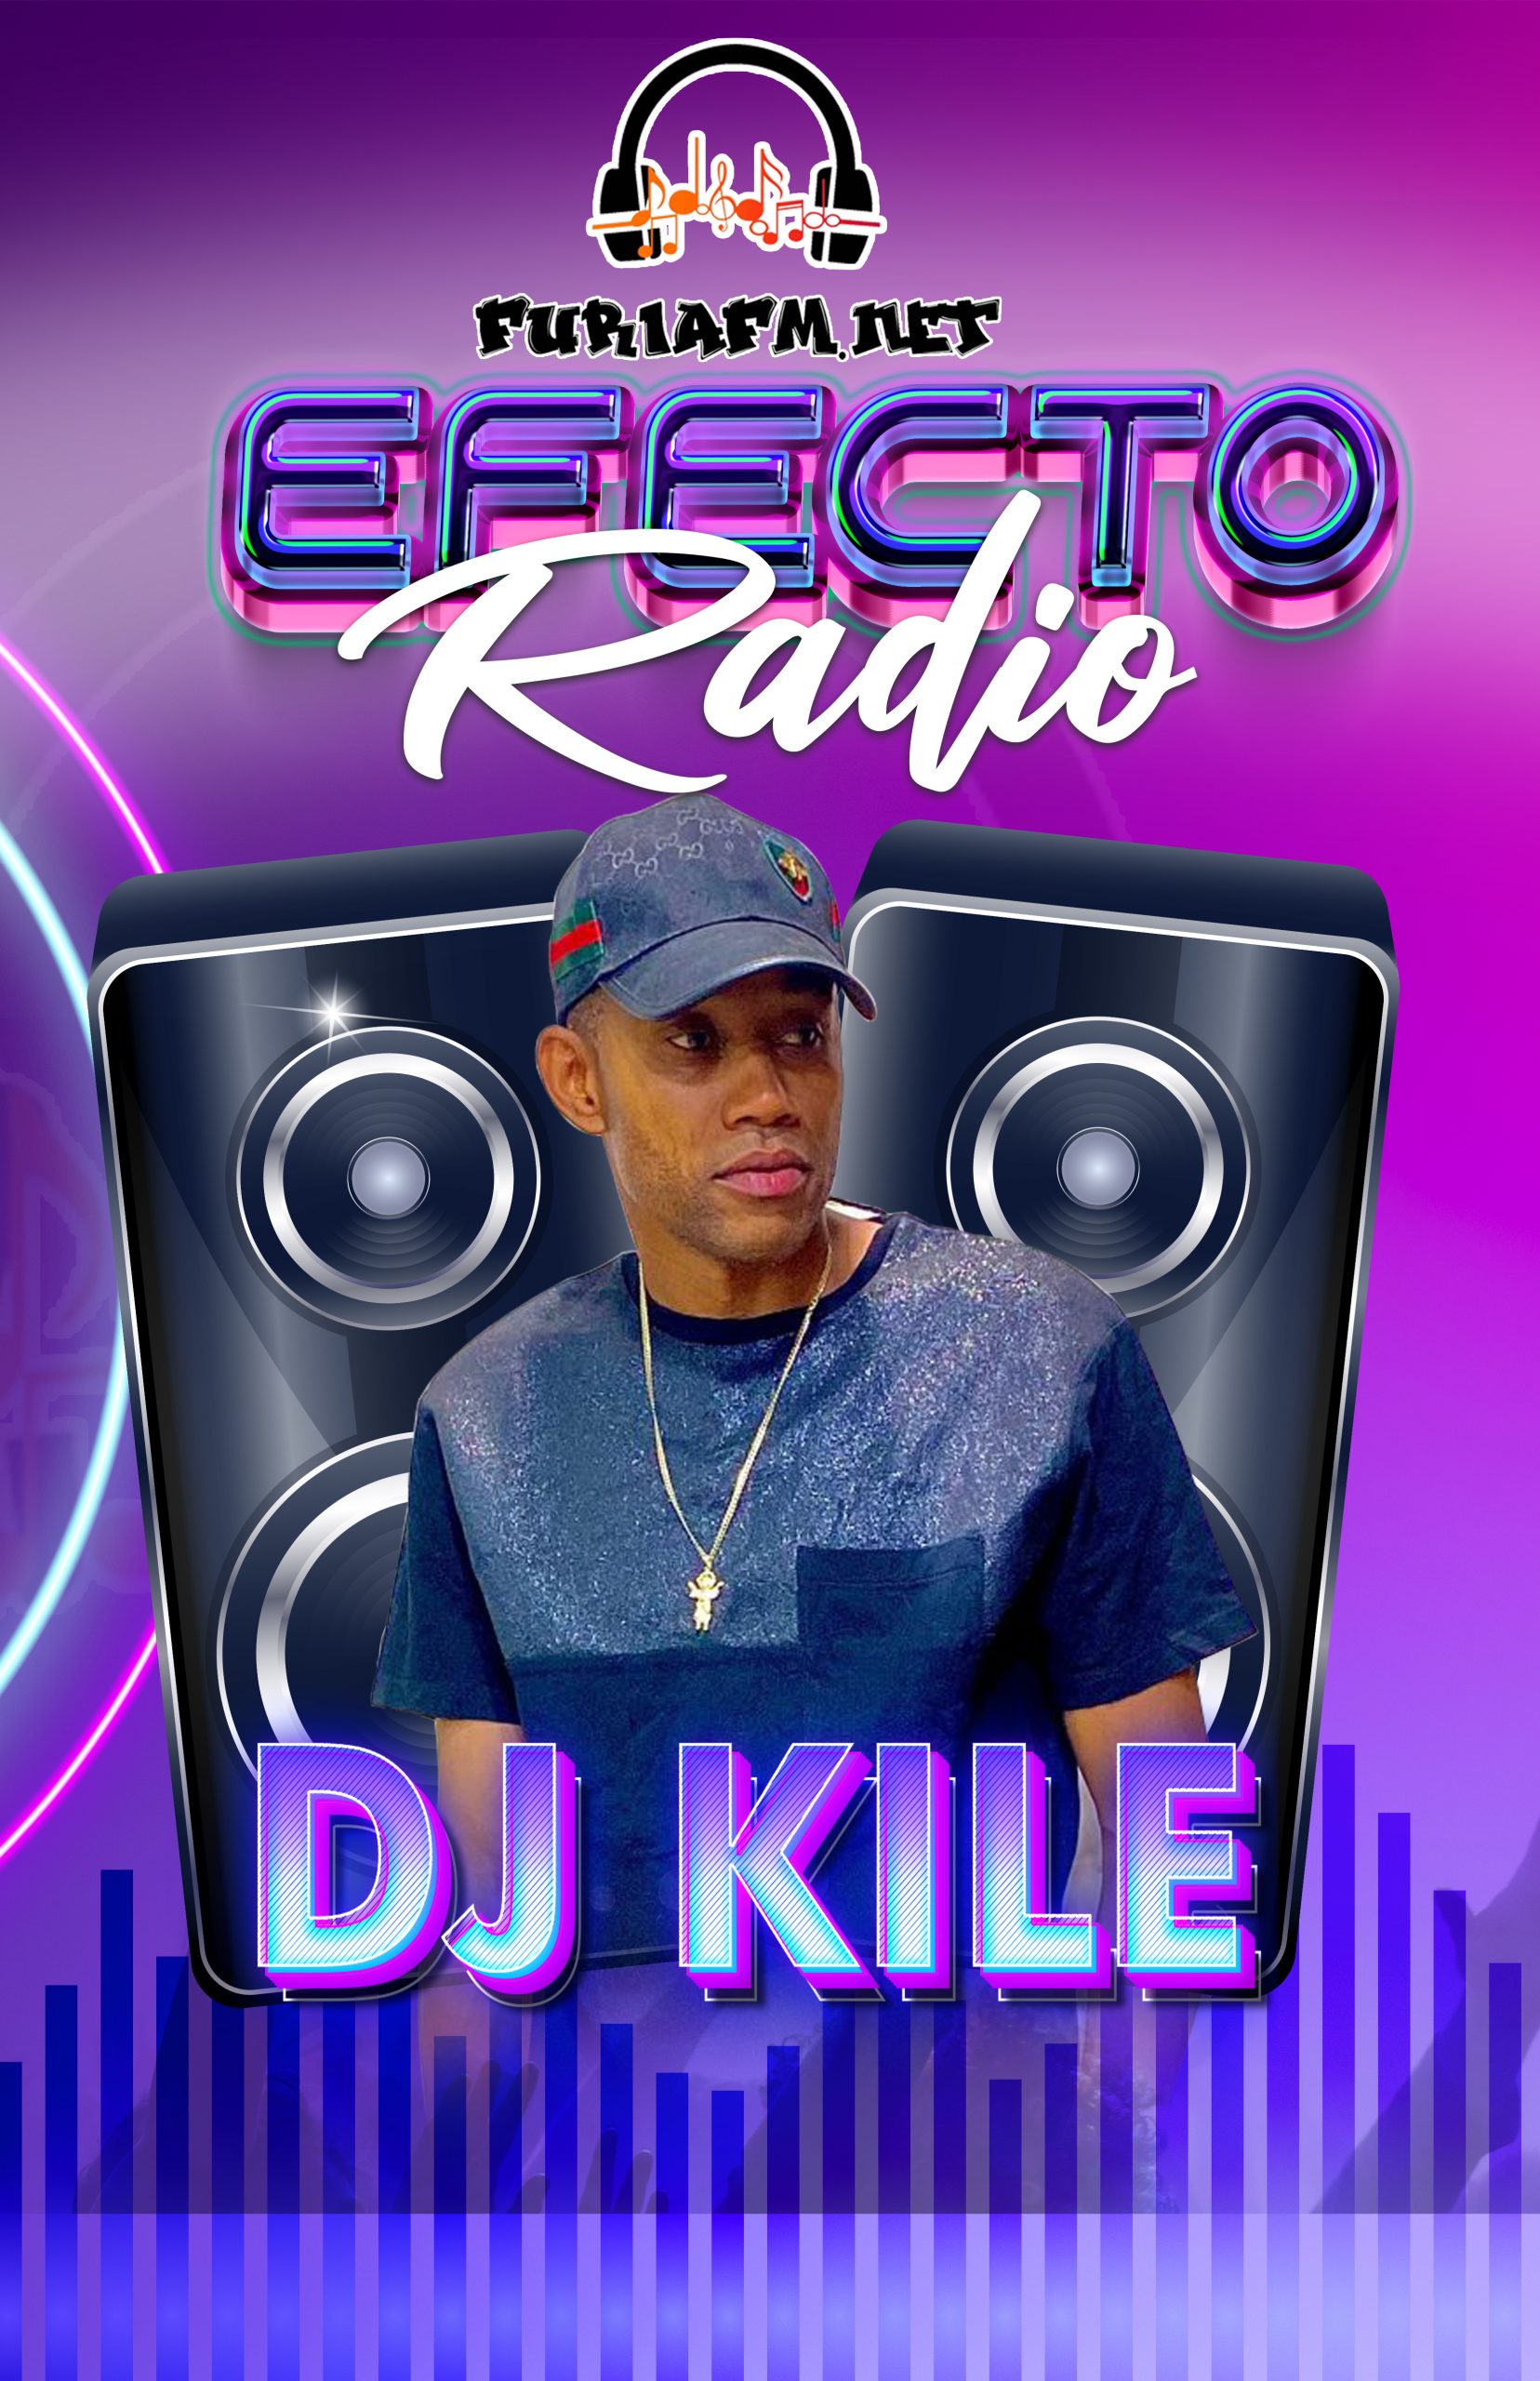 DJ KILE